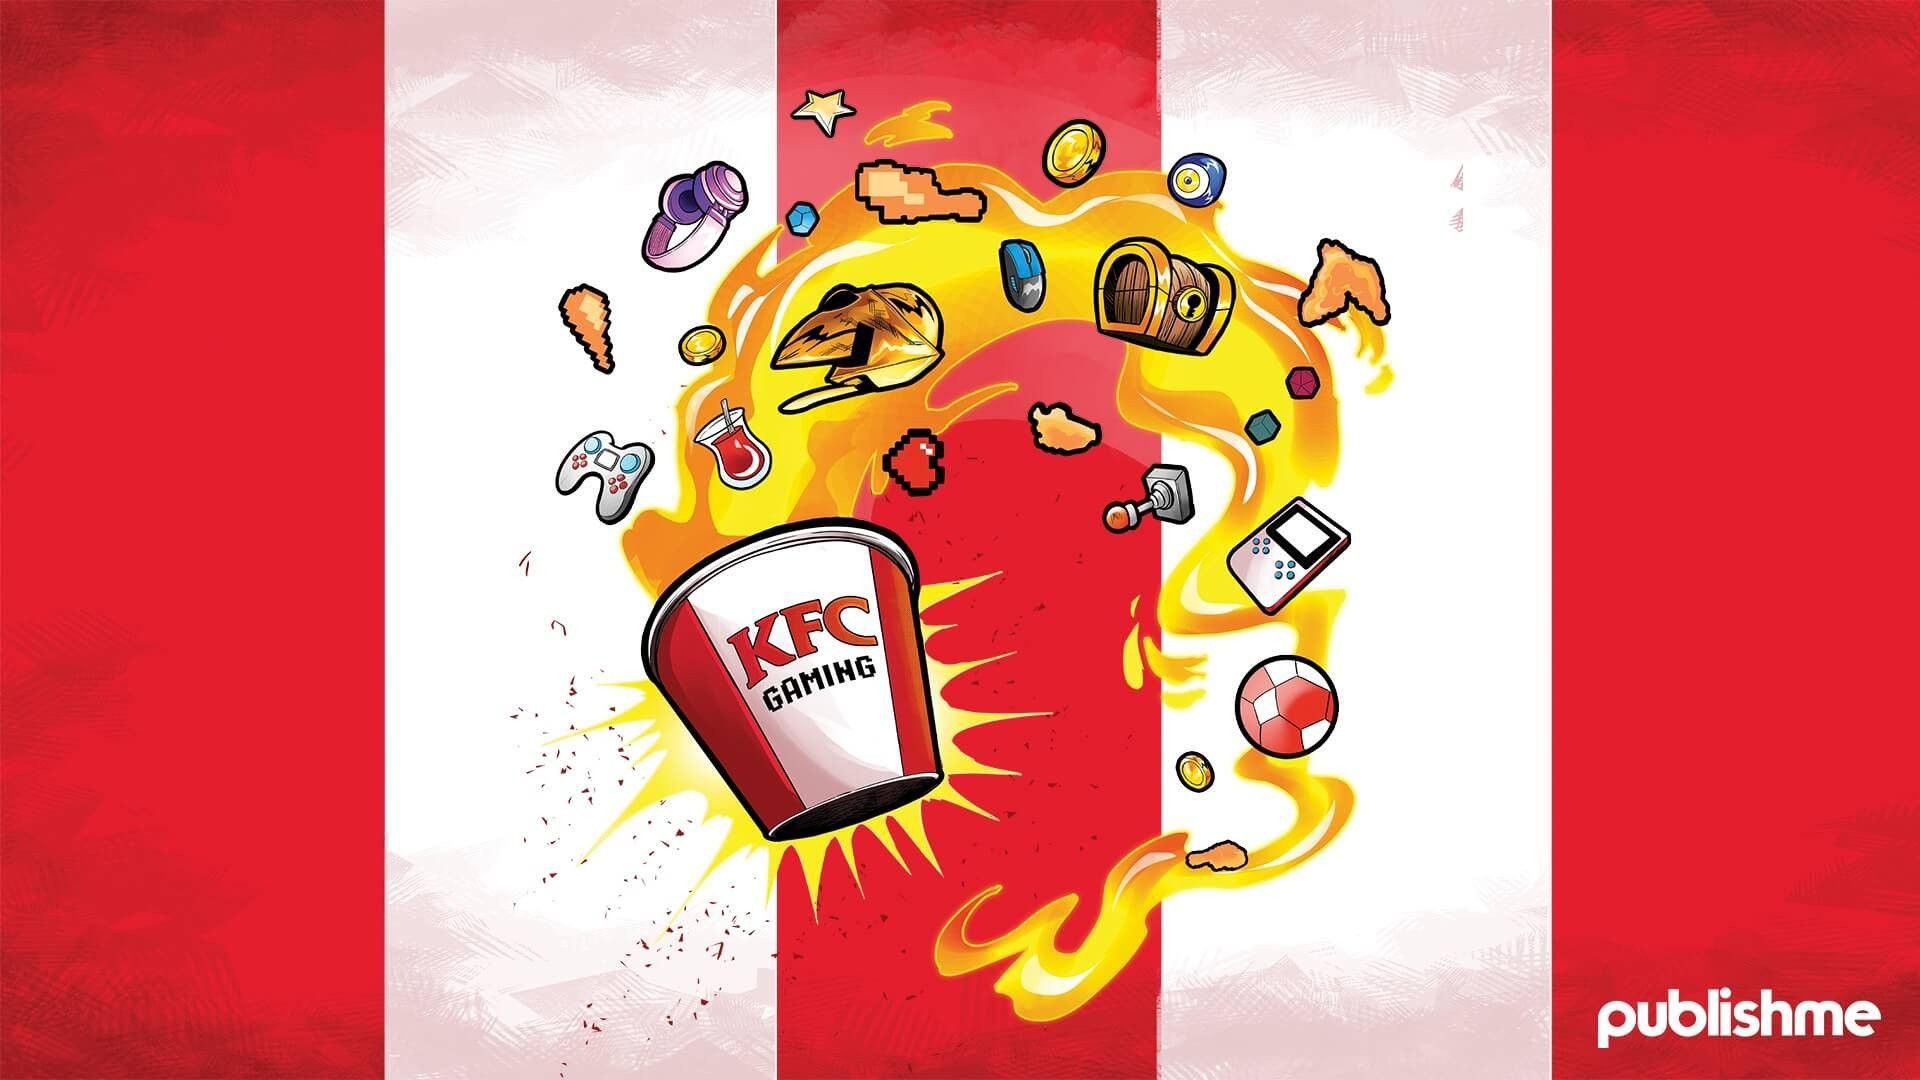 KFC Türkiye & Publishme İş Birliği ile Hayata Geçen KFC Gaming TR, Oyunculara Eşsiz Deneyimler Sunuyor